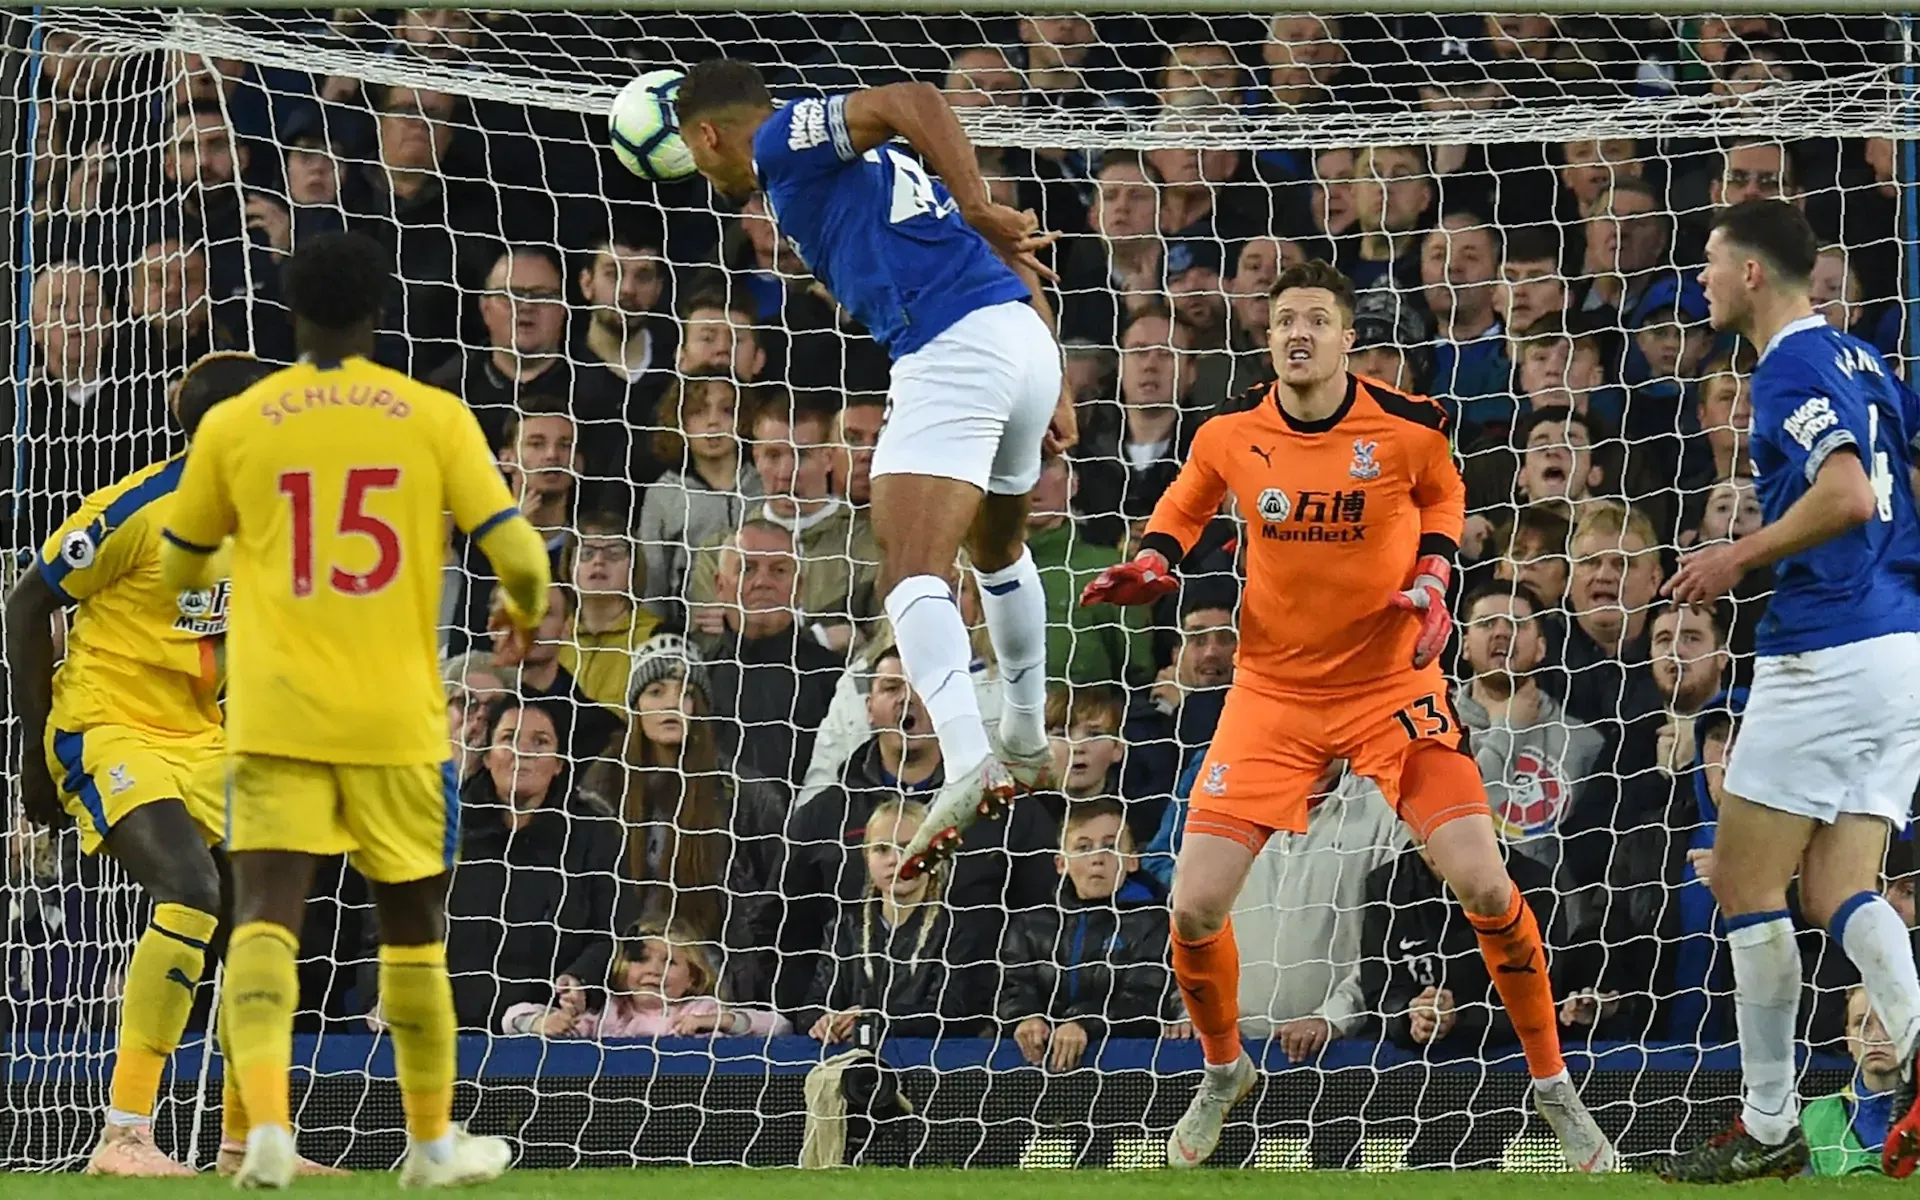 Dominic Calvert-Lewin came bật cao đánh đầu ghi bàn cho Everton